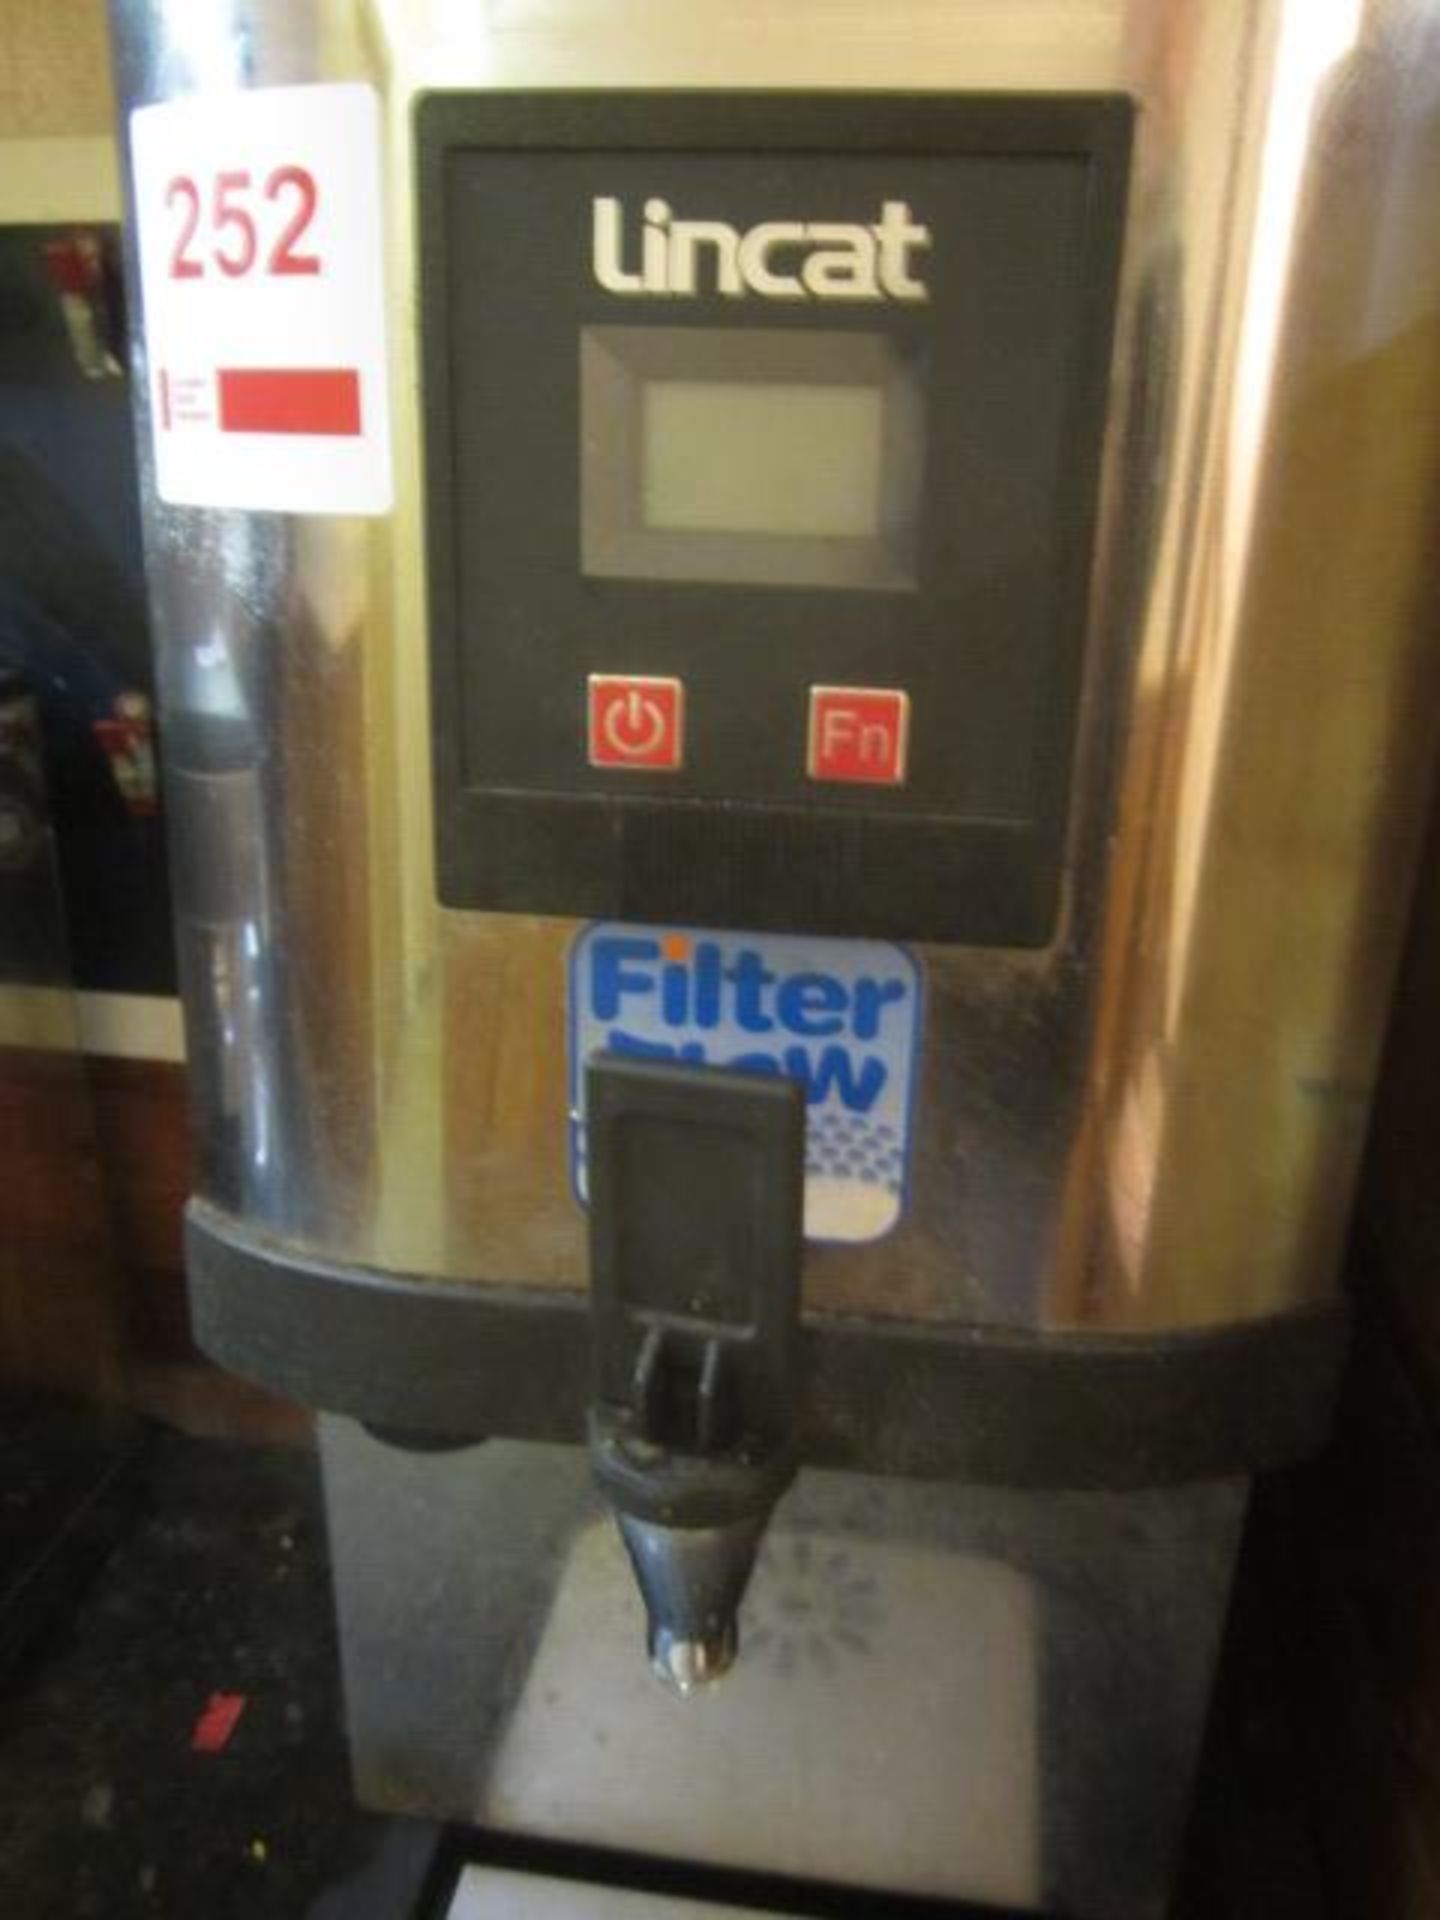 Lincat hot water dispenser **Located: Puddy Mark Café, High Street, Street, Somerset, BA16 0EW** - Image 2 of 3